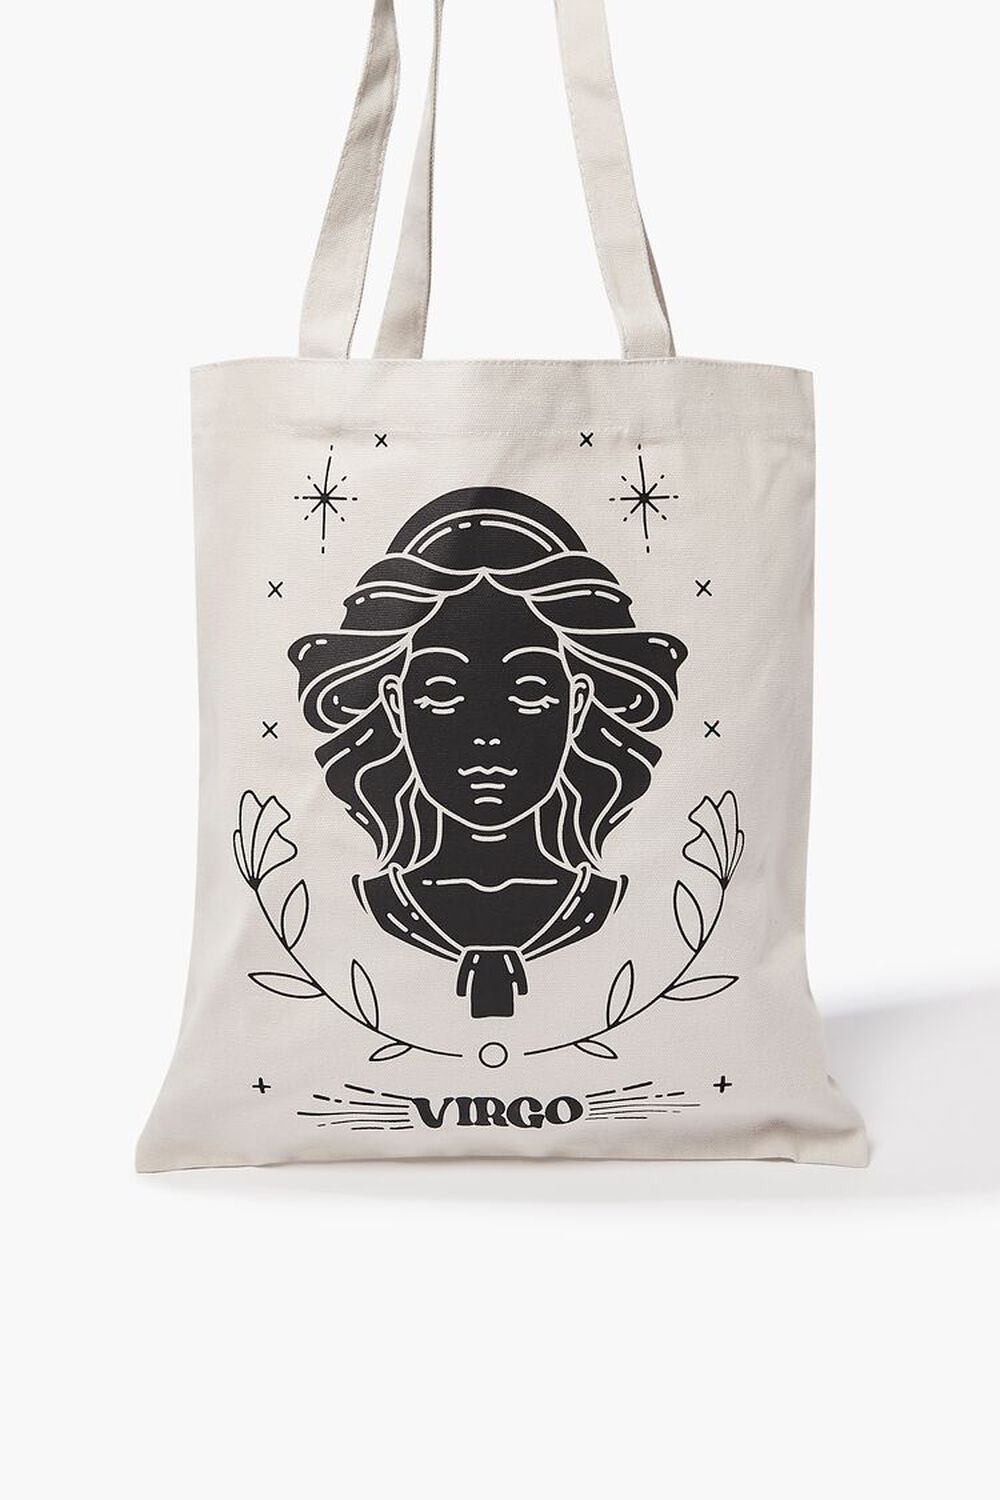 VIRGO/GREY Zodiac Graphic Tote Bag, image 1